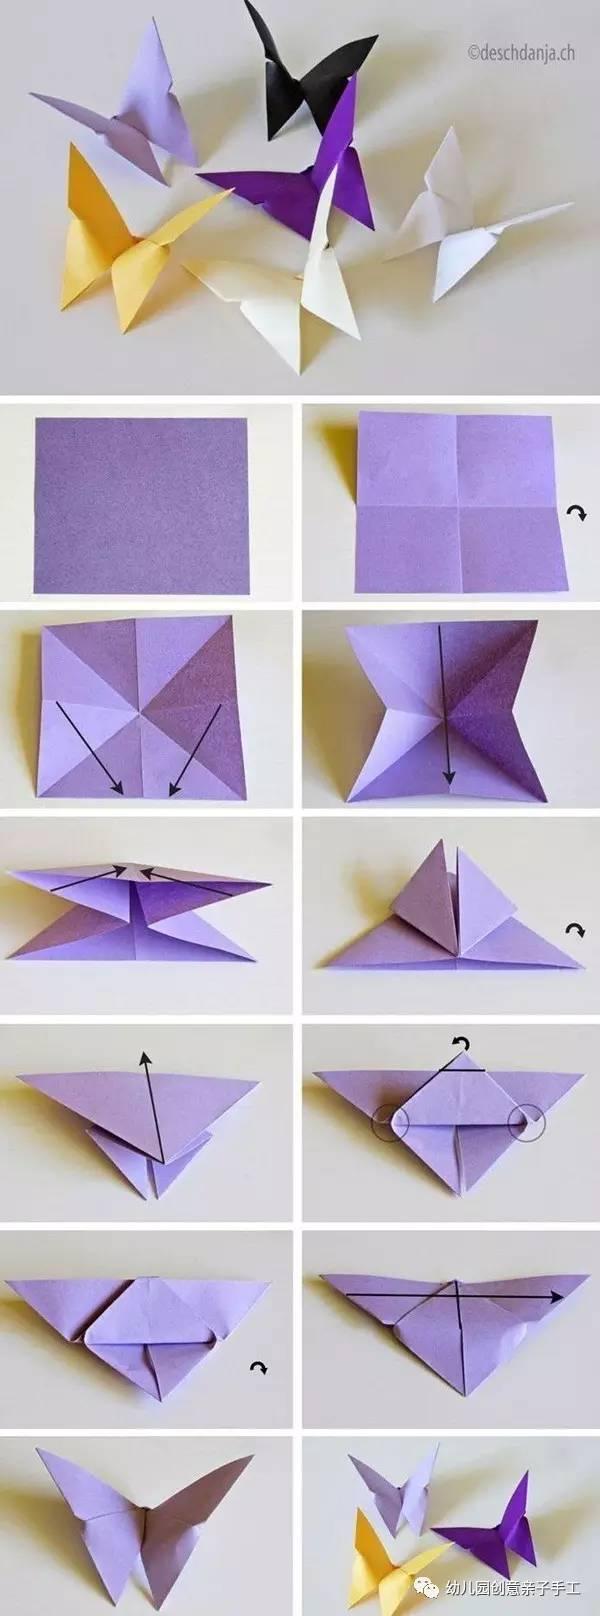 幼儿园手工童年折纸大全:飞机小船千纸鹤等十